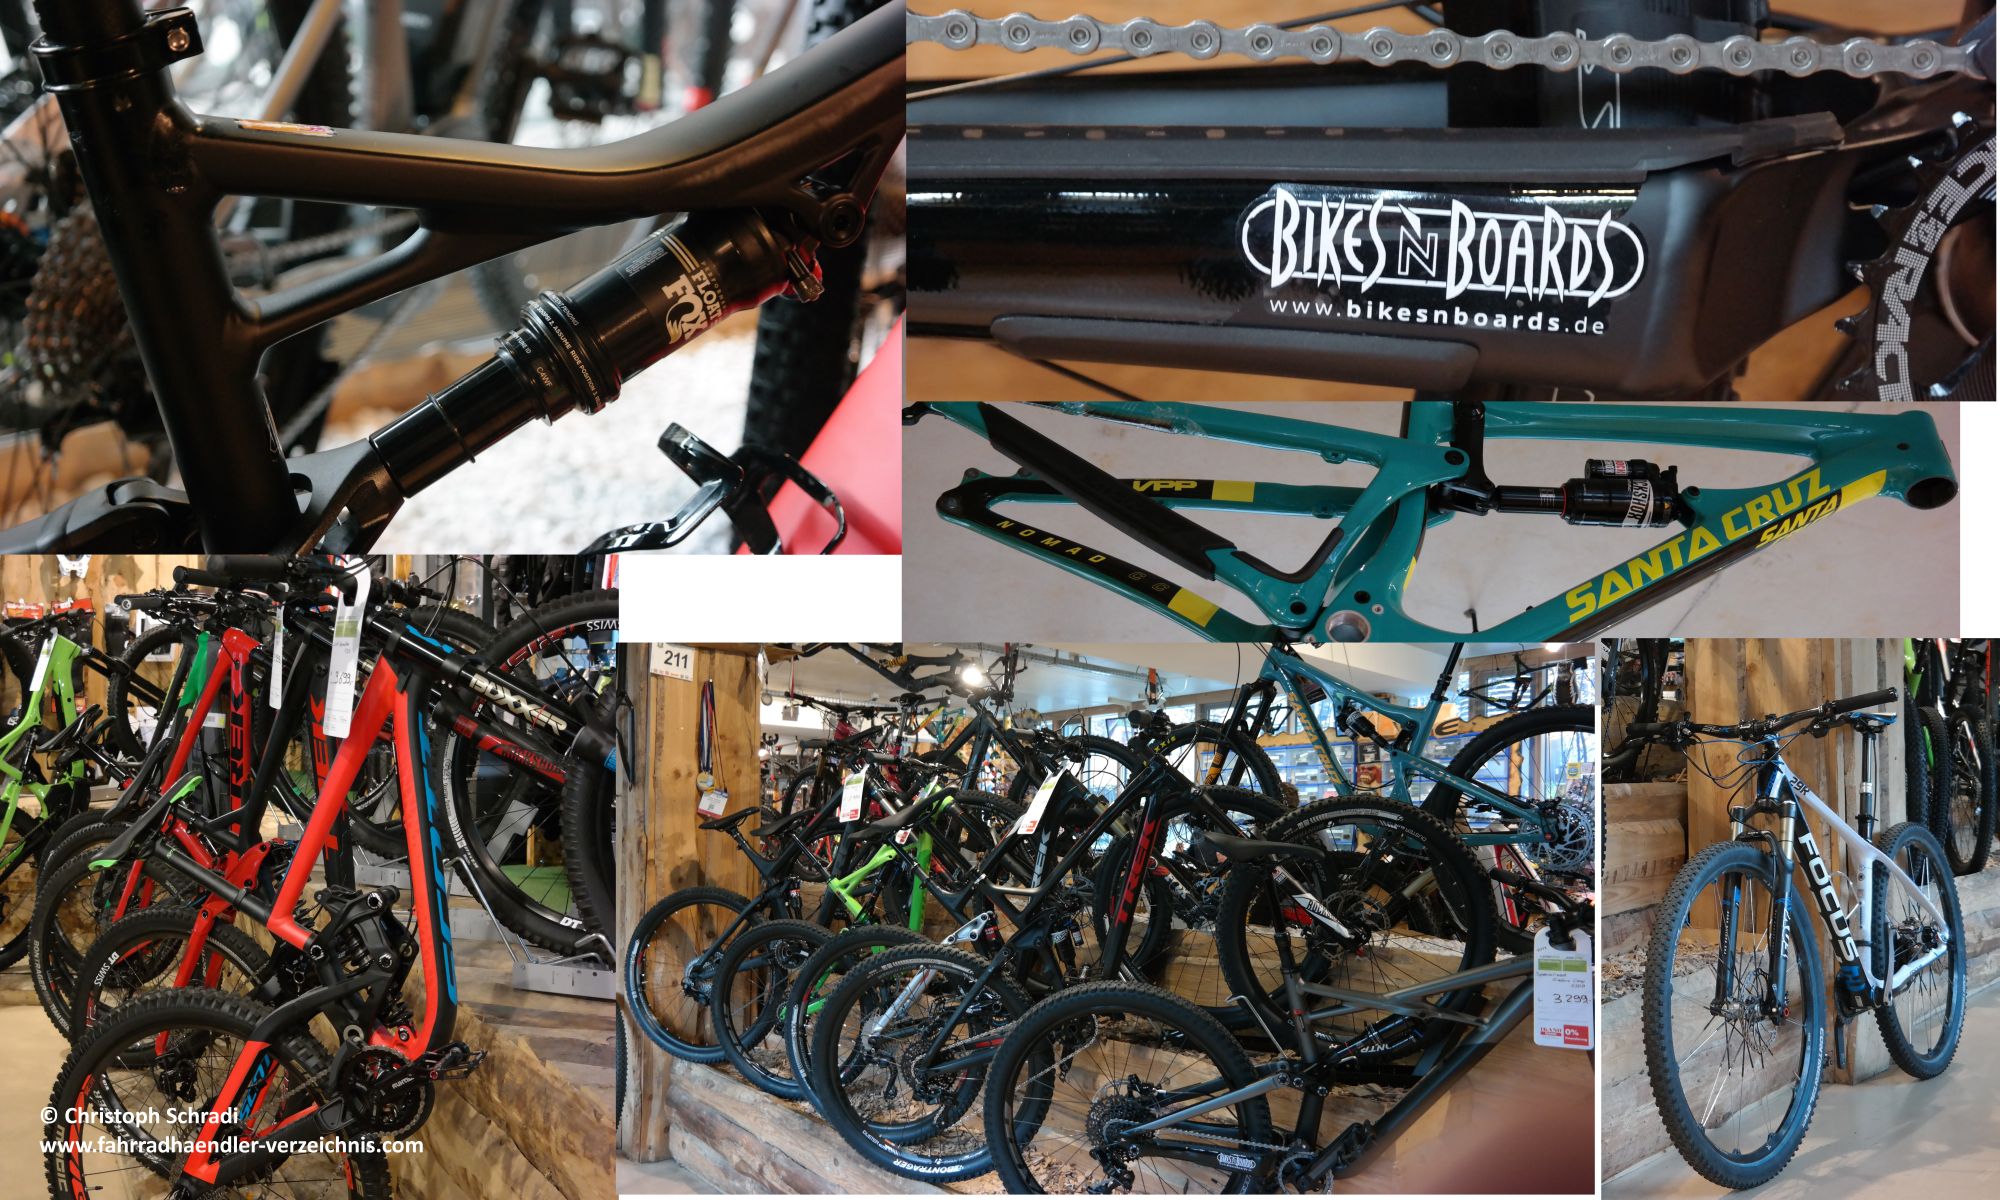 Wer ein Mountainbike sucht - welcher Art auch immer - ist bei dem Stuttgarter Fahrradladen Bikes n Boards sicher an der richtigen Adresse